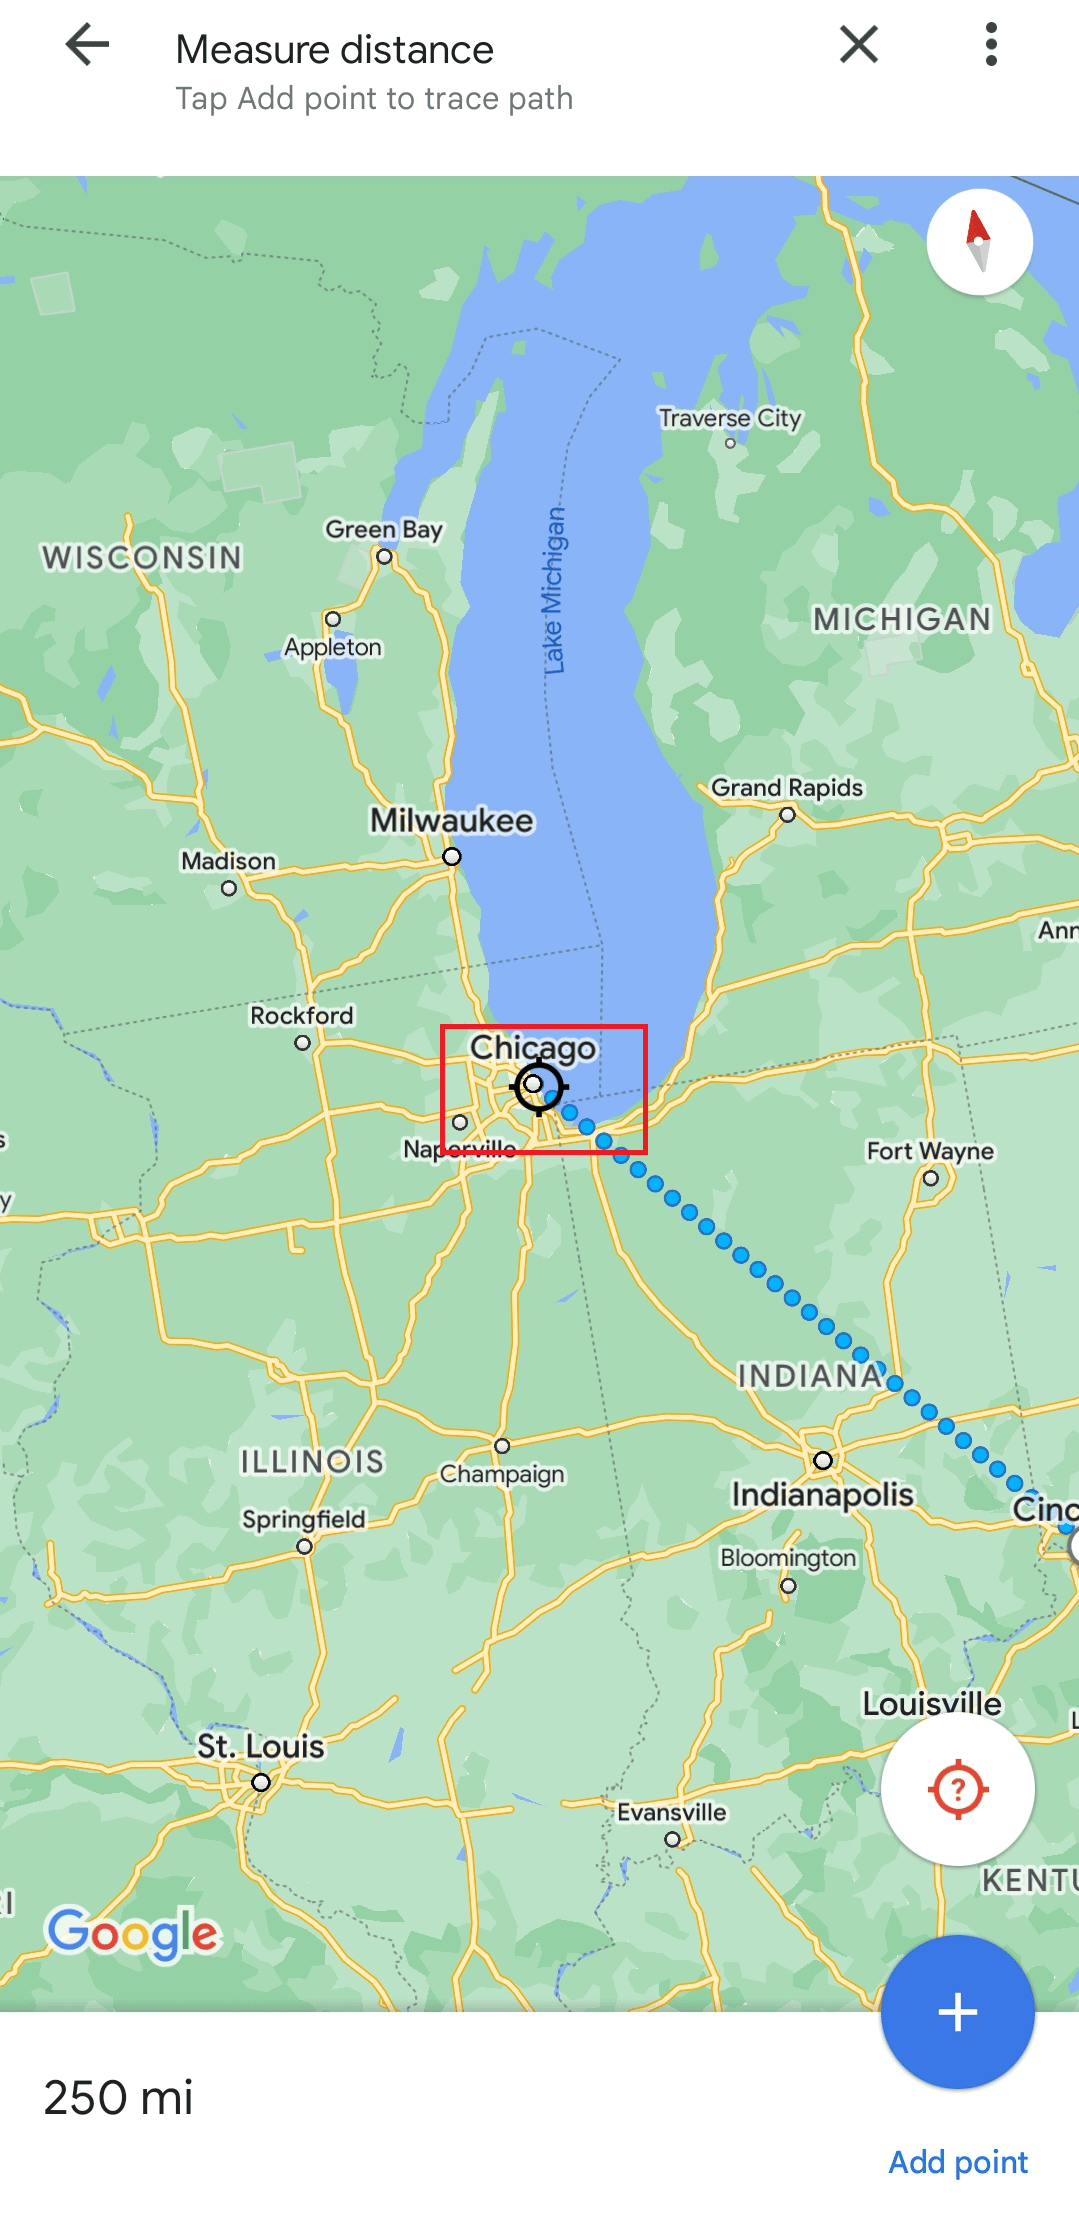 Suchen Sie auf der Karte nach Chicago, um die Entfernung zu messen | auf halbem Weg zwischen den Städten